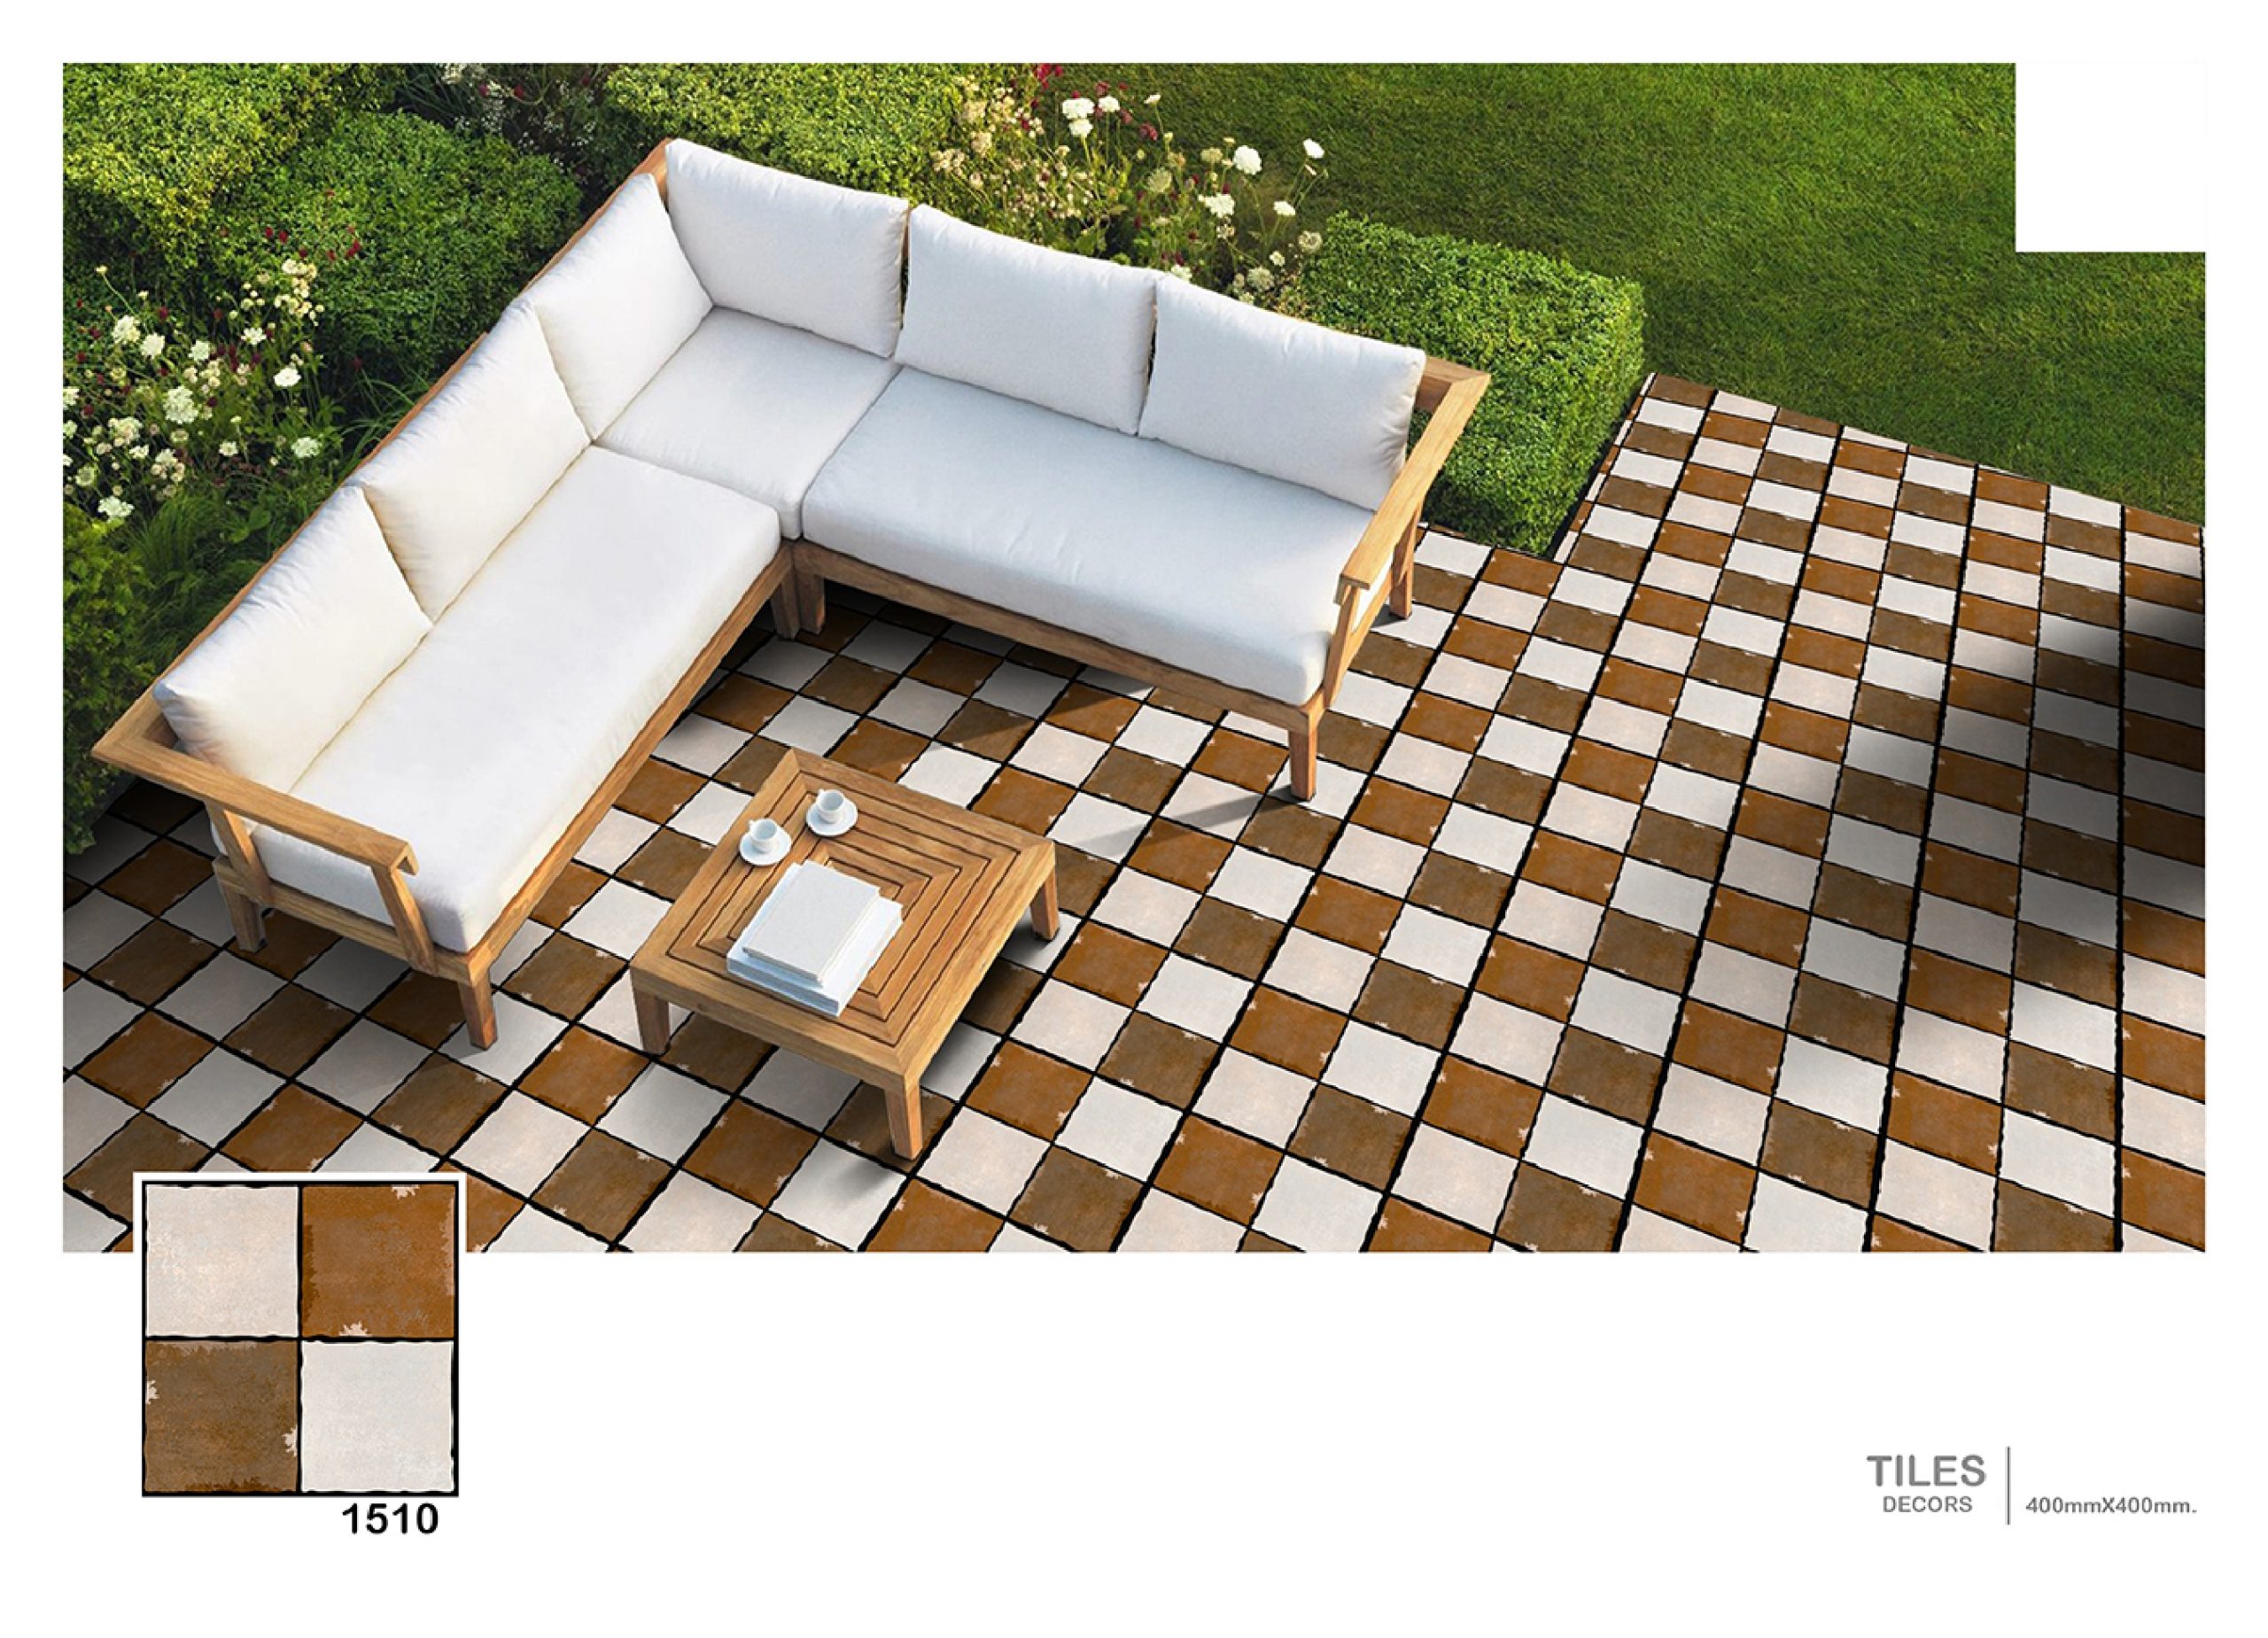 1510 – Floor Tiles